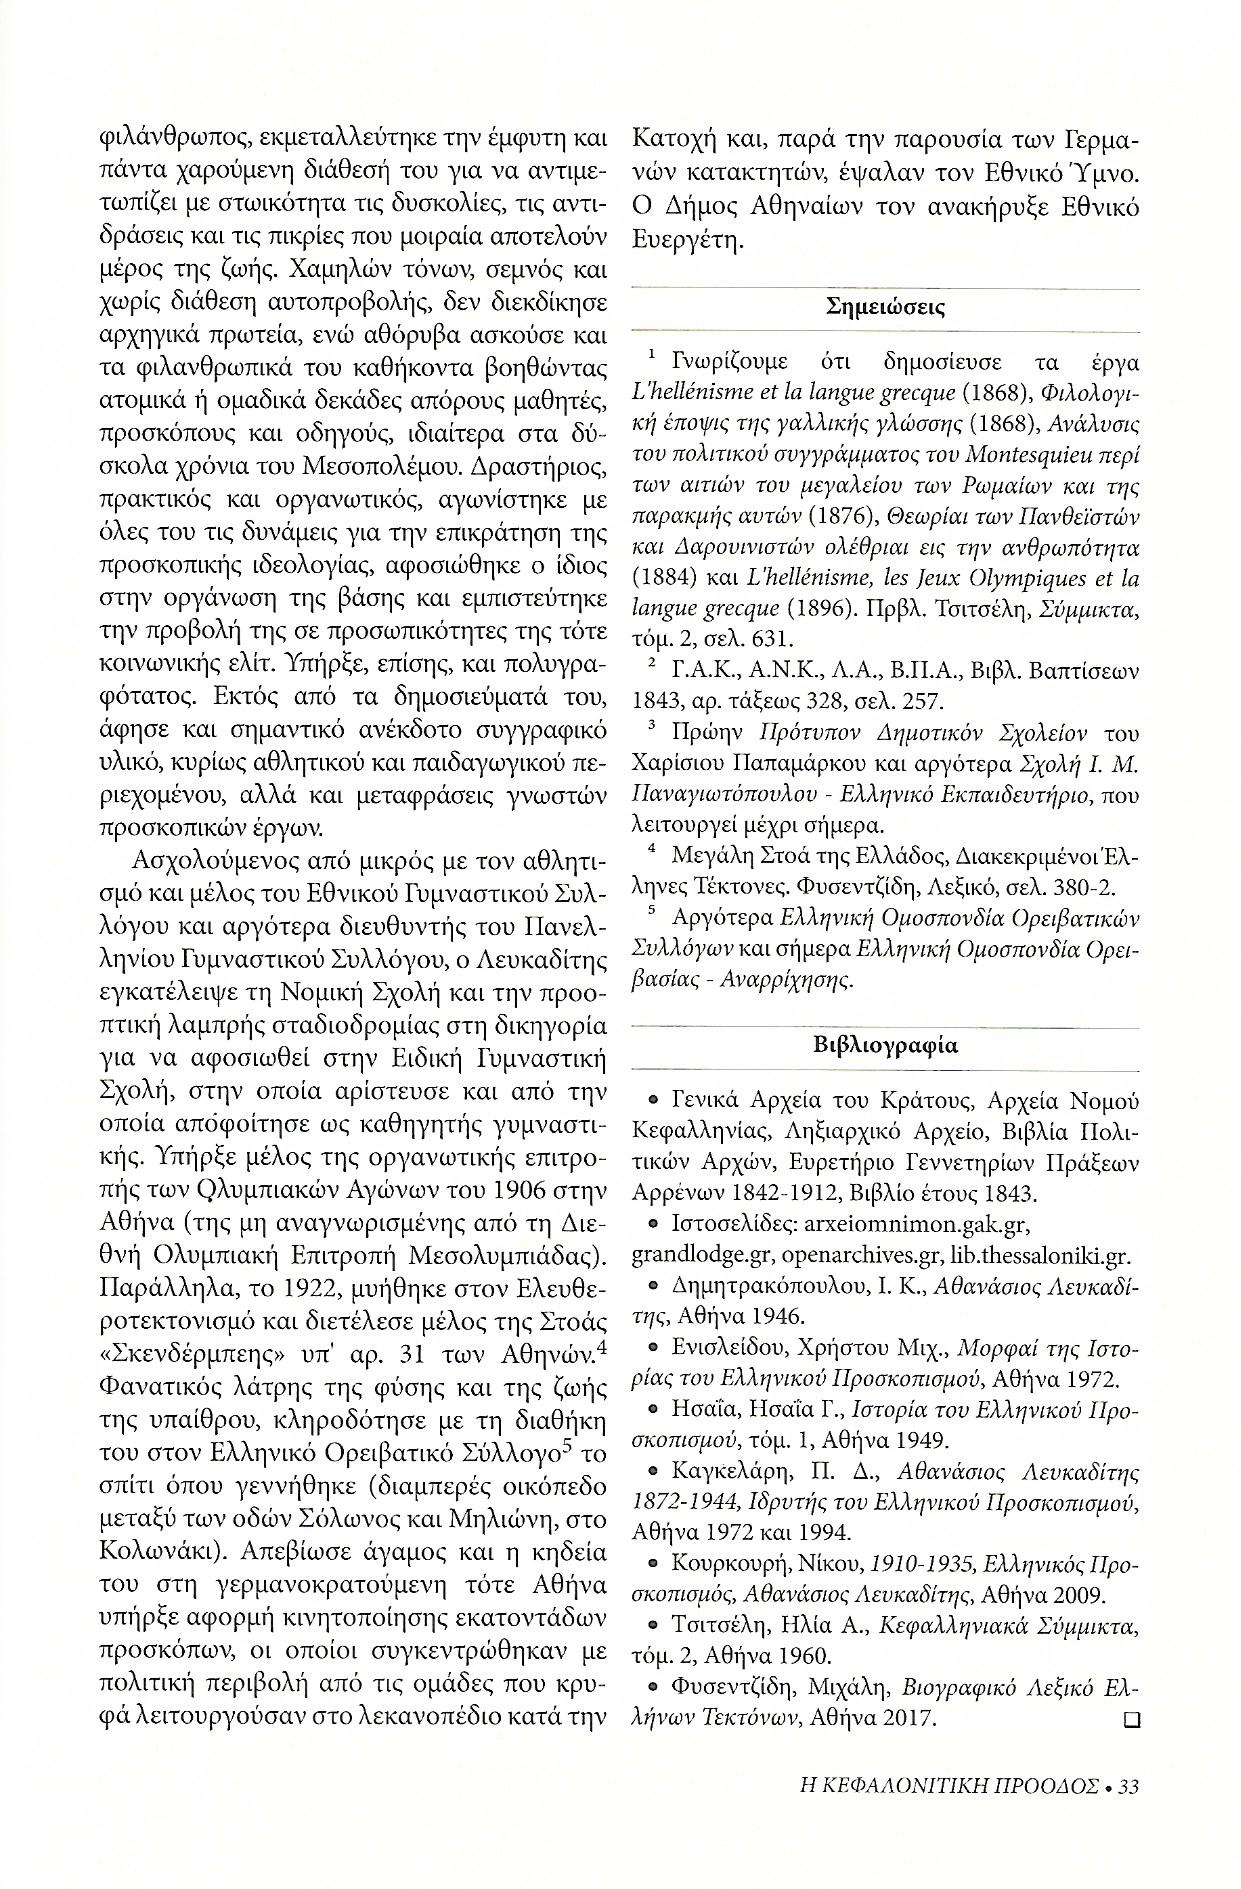 Αθανάσιος Λευκαδίτης , Κεφαλονίτικη Πρόοδος, Β-24, σελ. 33